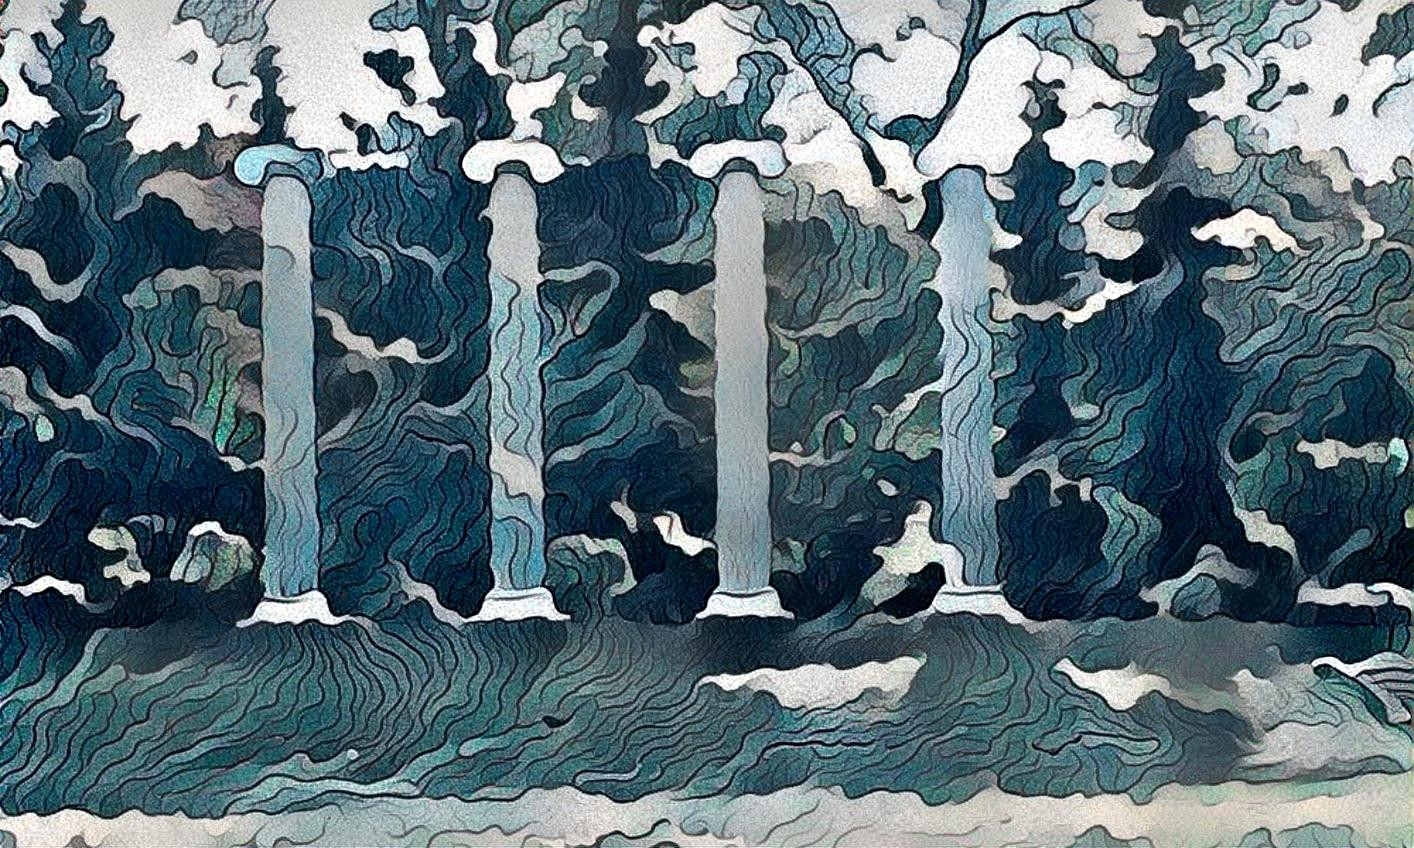 Pillars of the Sea